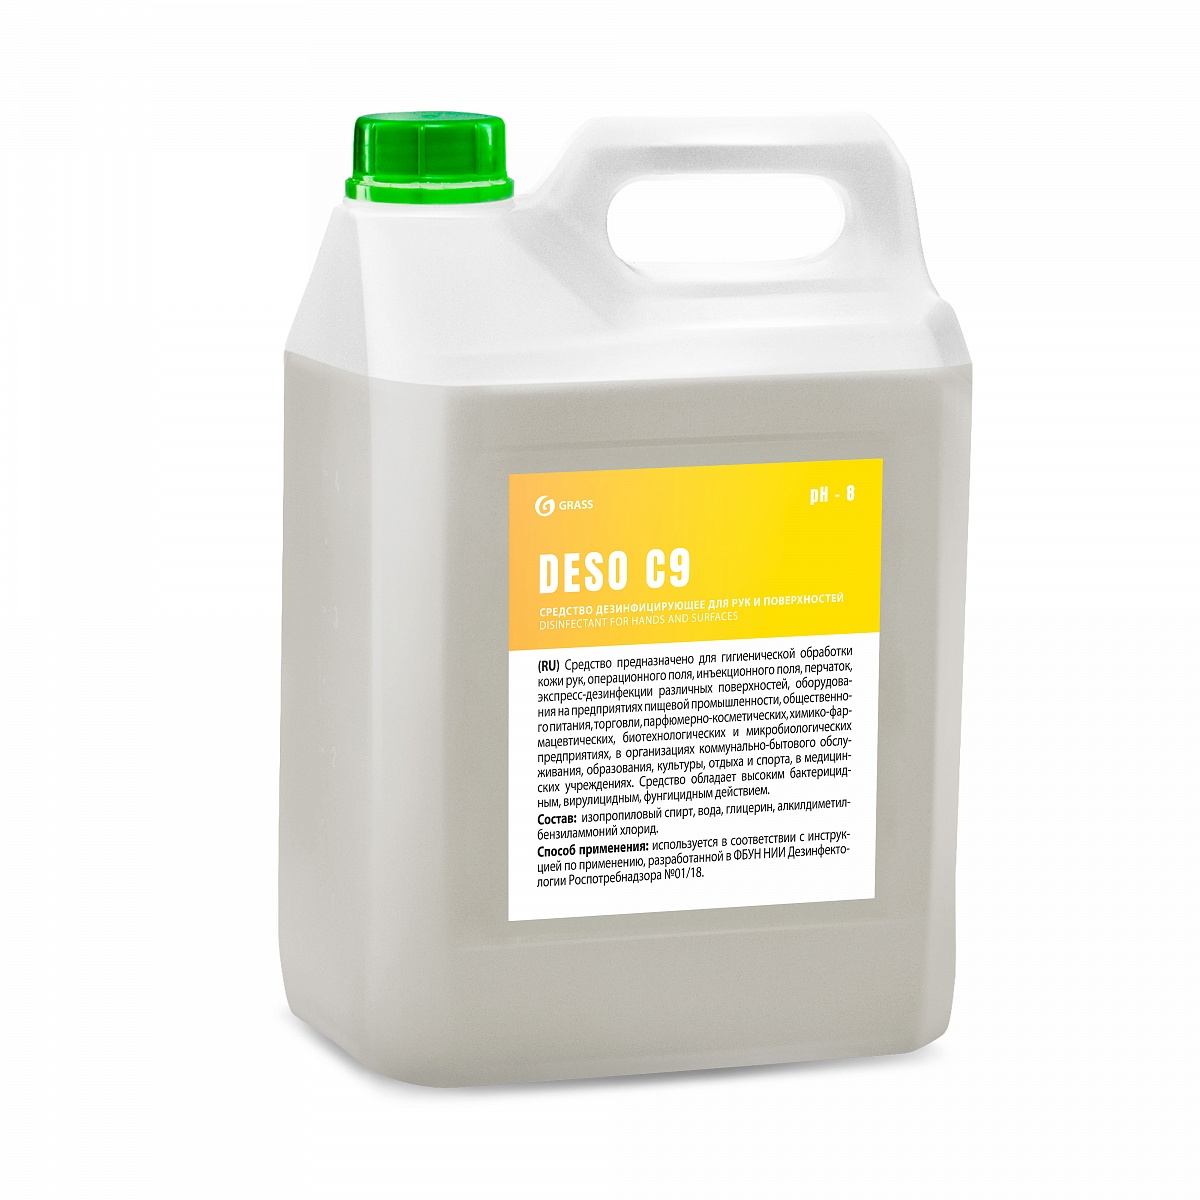 DESO (C9) 5 л. Средство для чистки и дезинфекции на основе изопропилового спирта. Grass